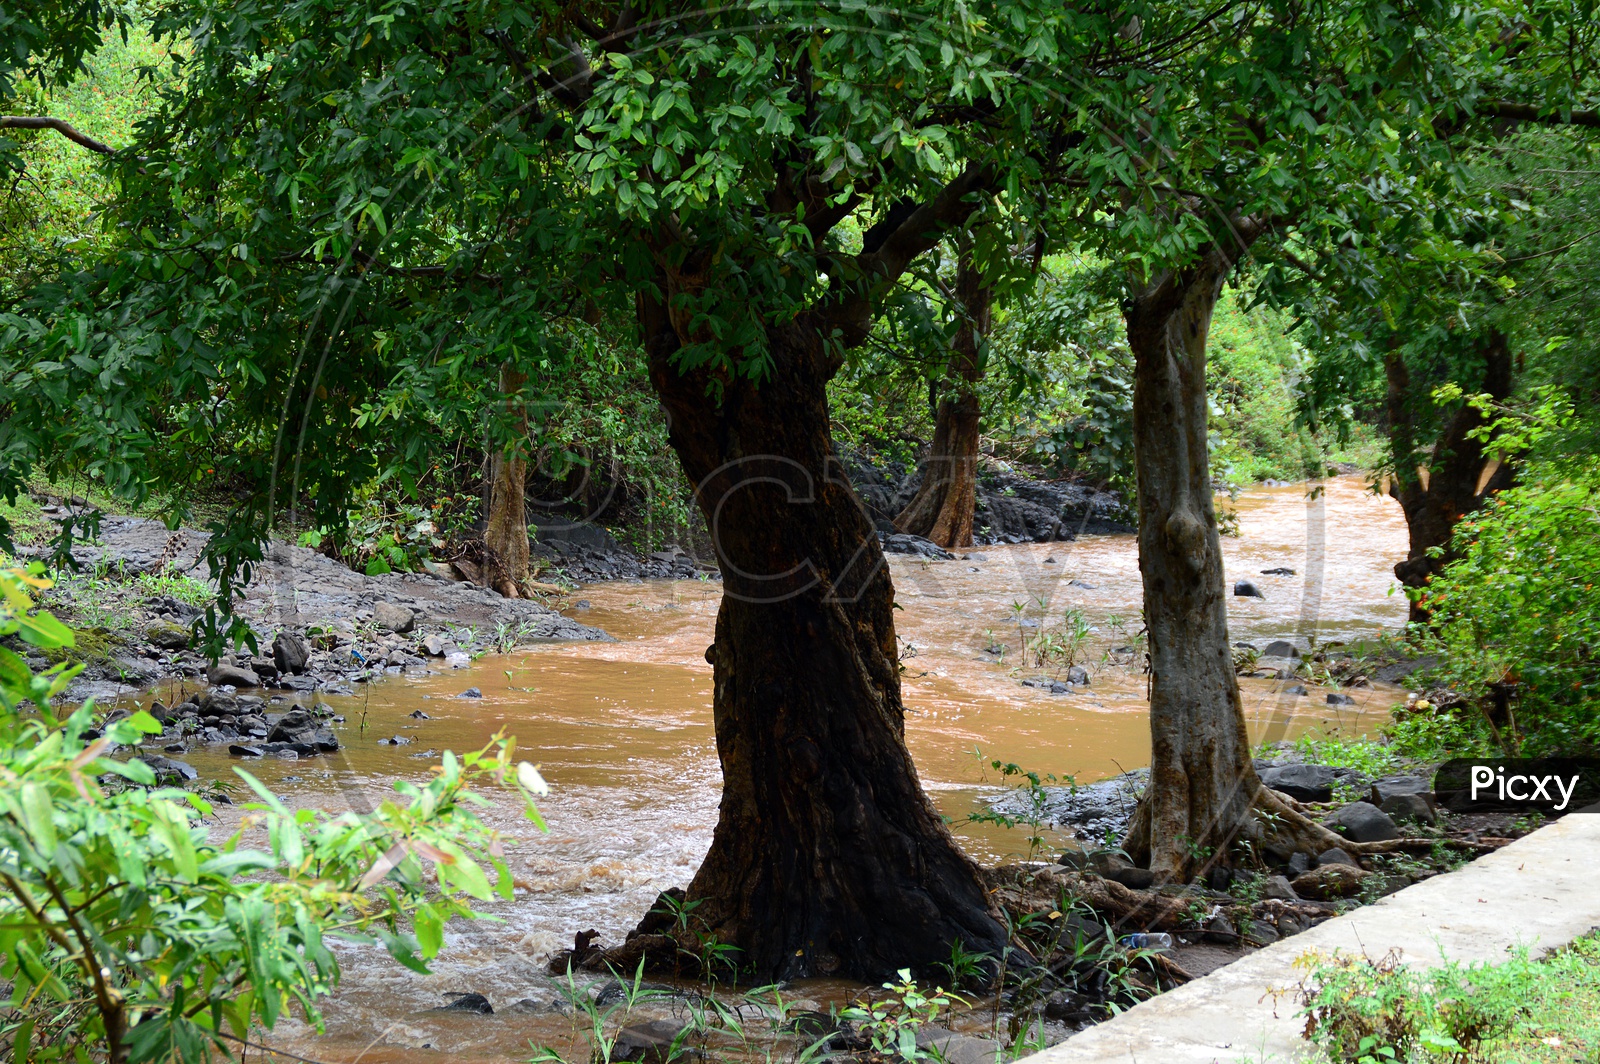 Flood water flow alongside the trees